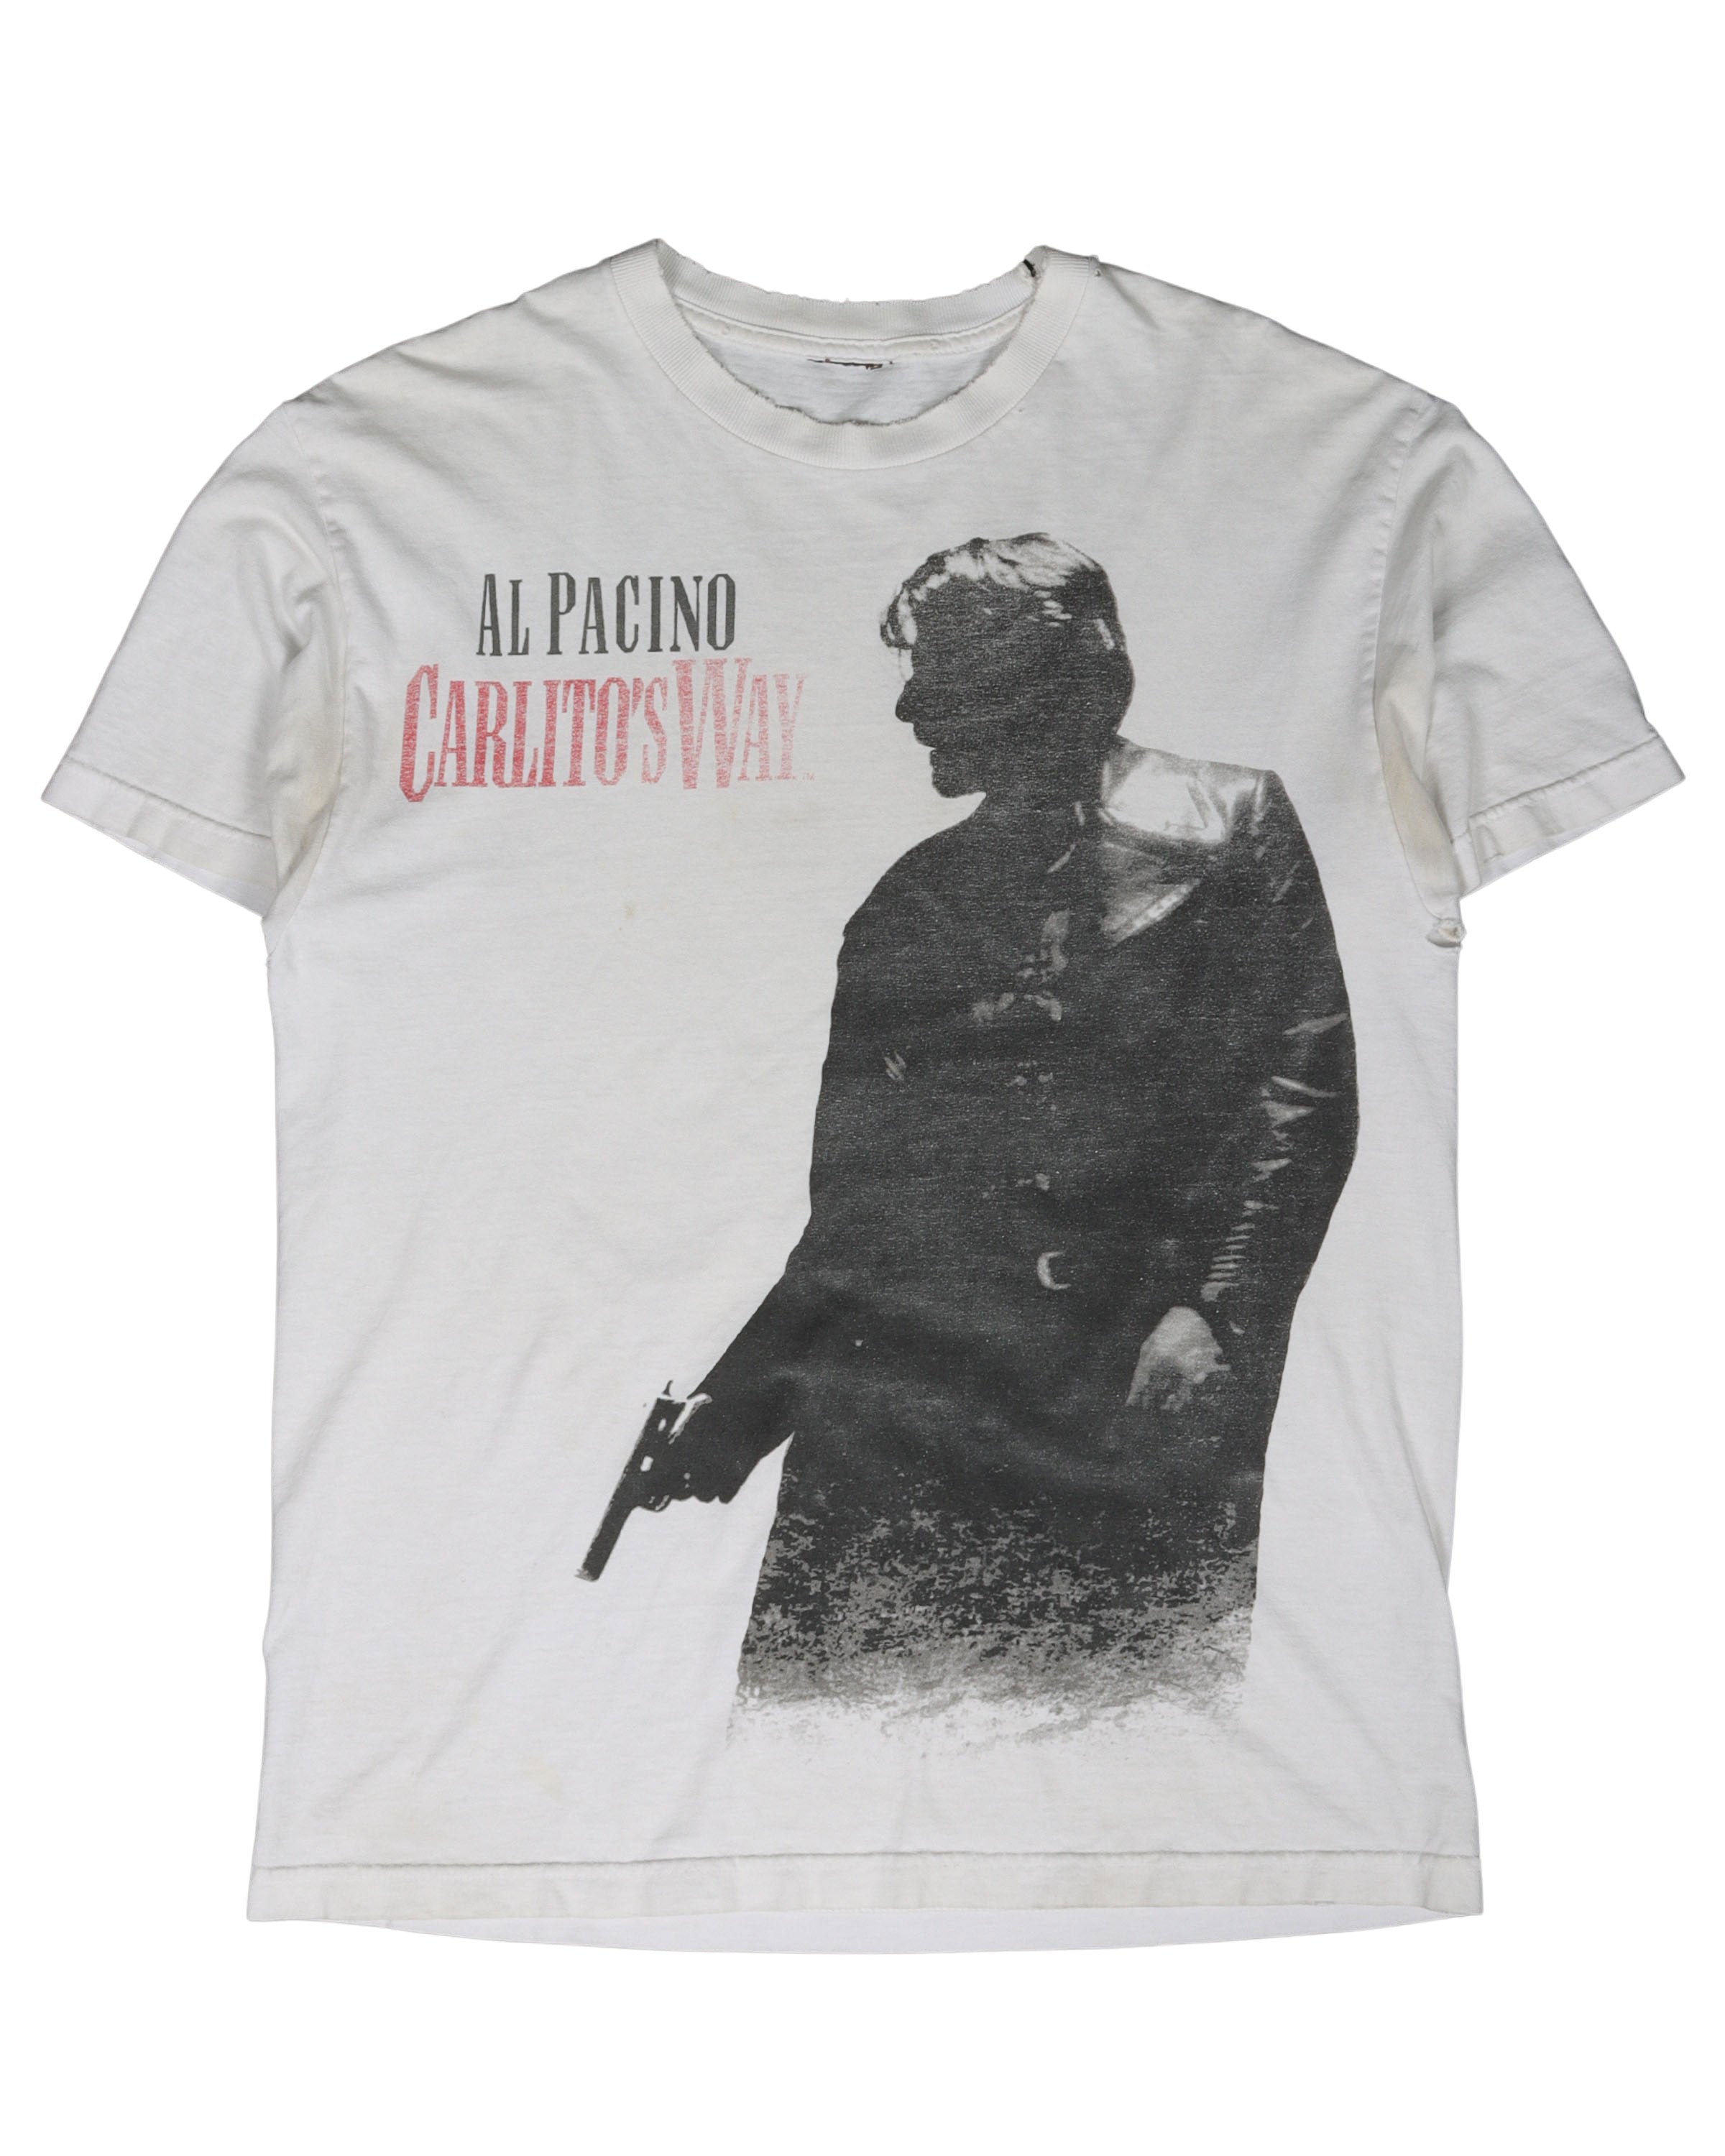 Al Pacino Carlitos Way T-Shirt